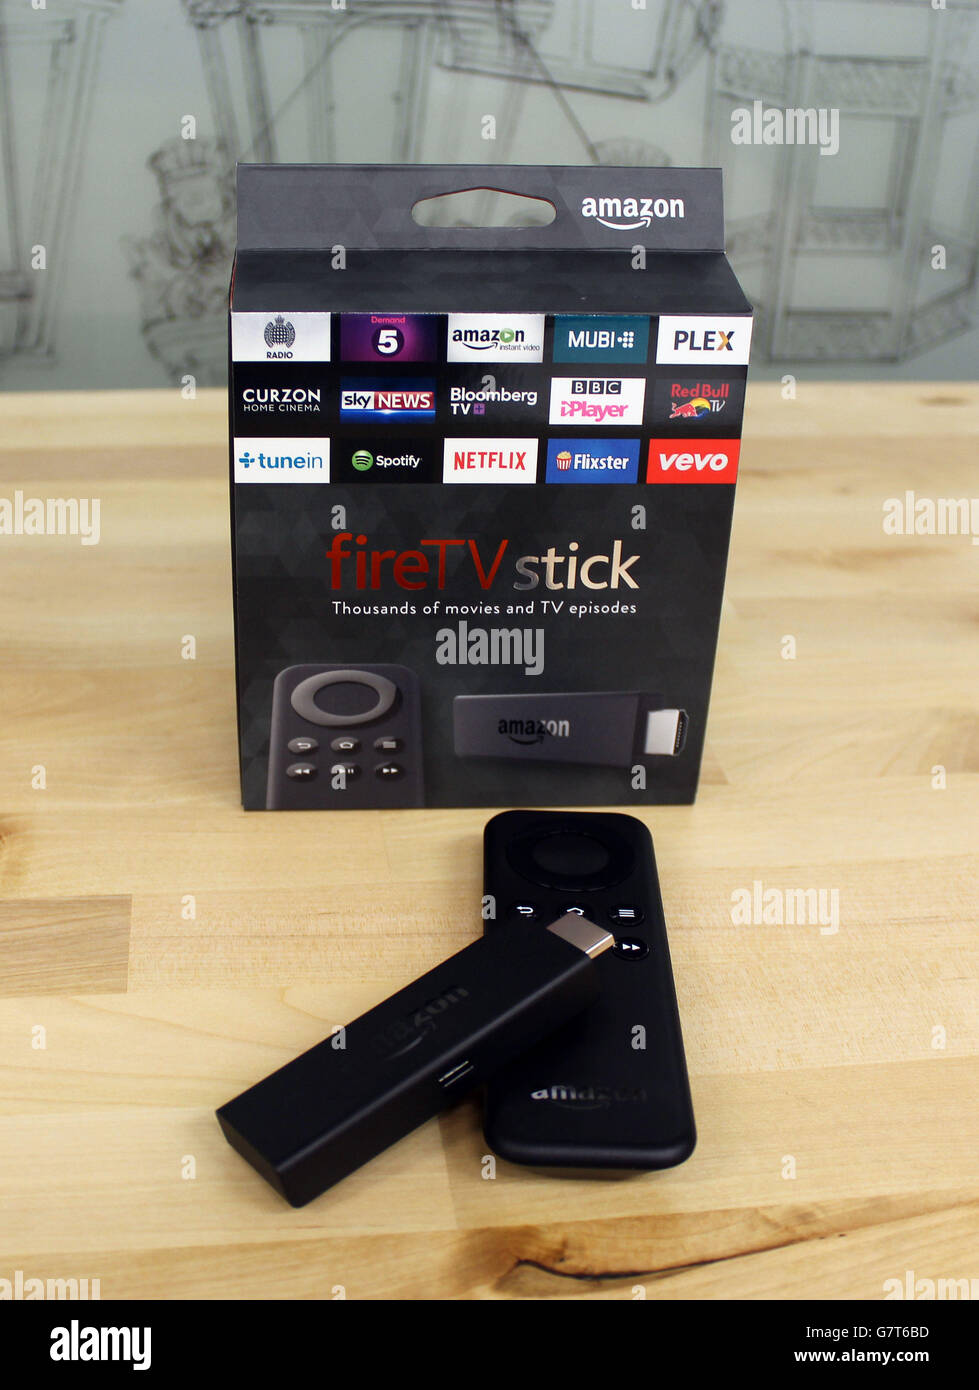 Der neue Amazon Fire TV Stick, eine portable Version seiner Streaming-Box, die die Größe eines USB-Sticks und wird direkt in den HDMI-Anschluss eines Fernsehers, der ab heute vorbestellt werden kann. Stockfoto